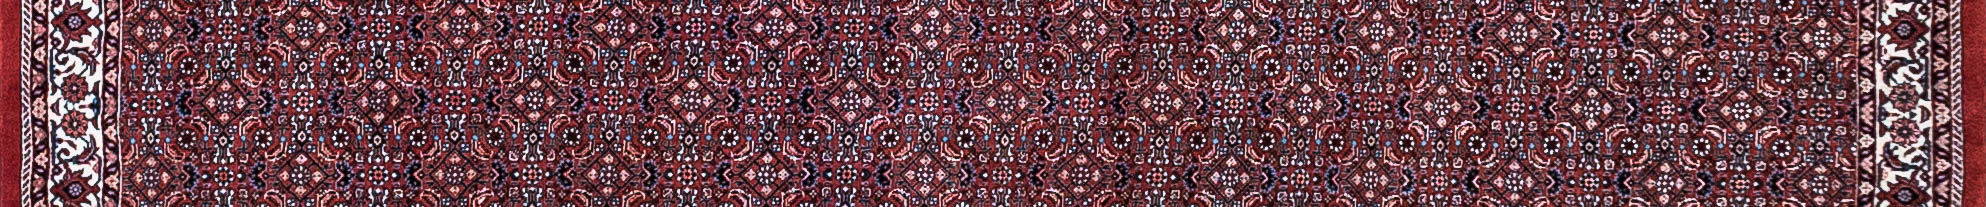 Bidjar Persian Carpet Rug N1Carpet Canada Montreal Tapis Persan 1950